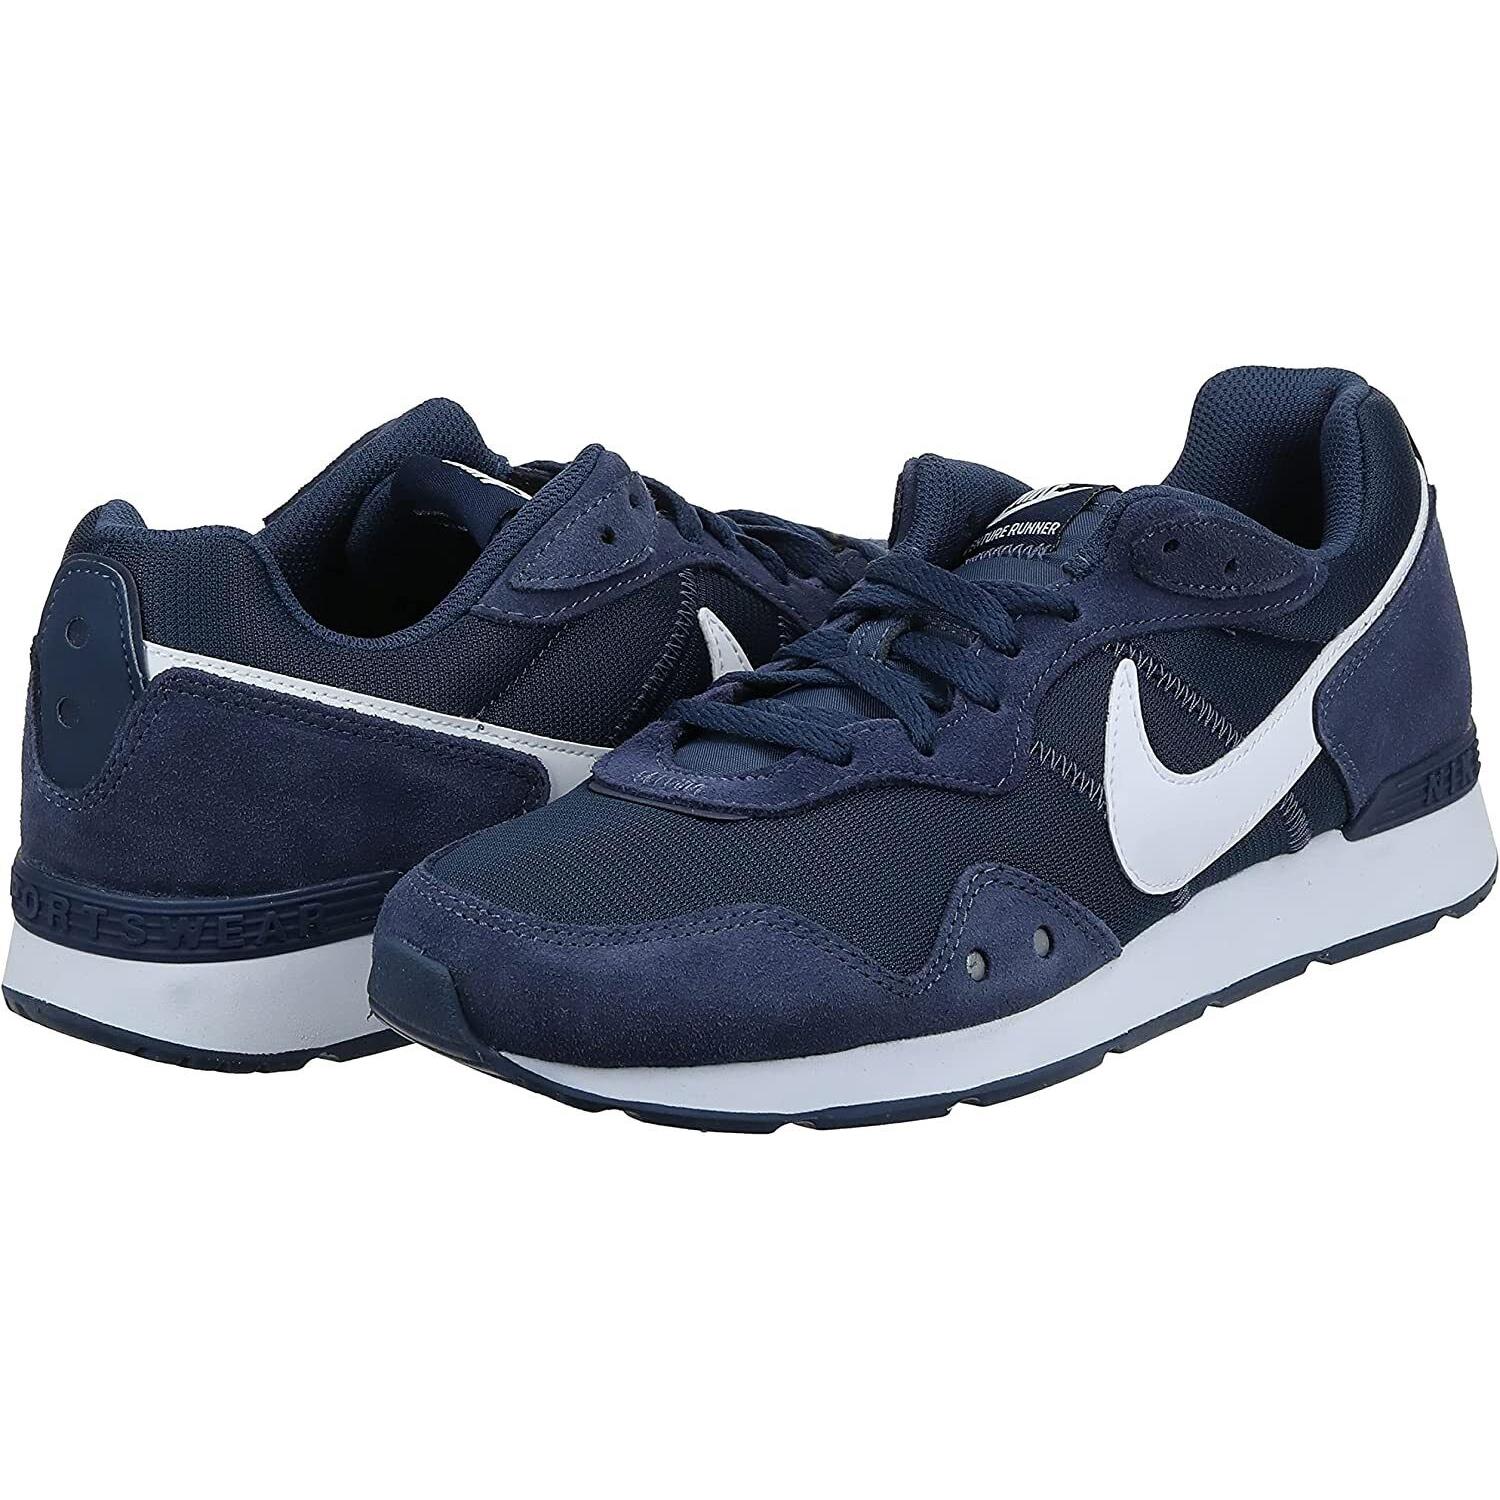 Nike Venture Runner Mens Running Shoes CK2944 400 Navy Blue White Sizes 7-10